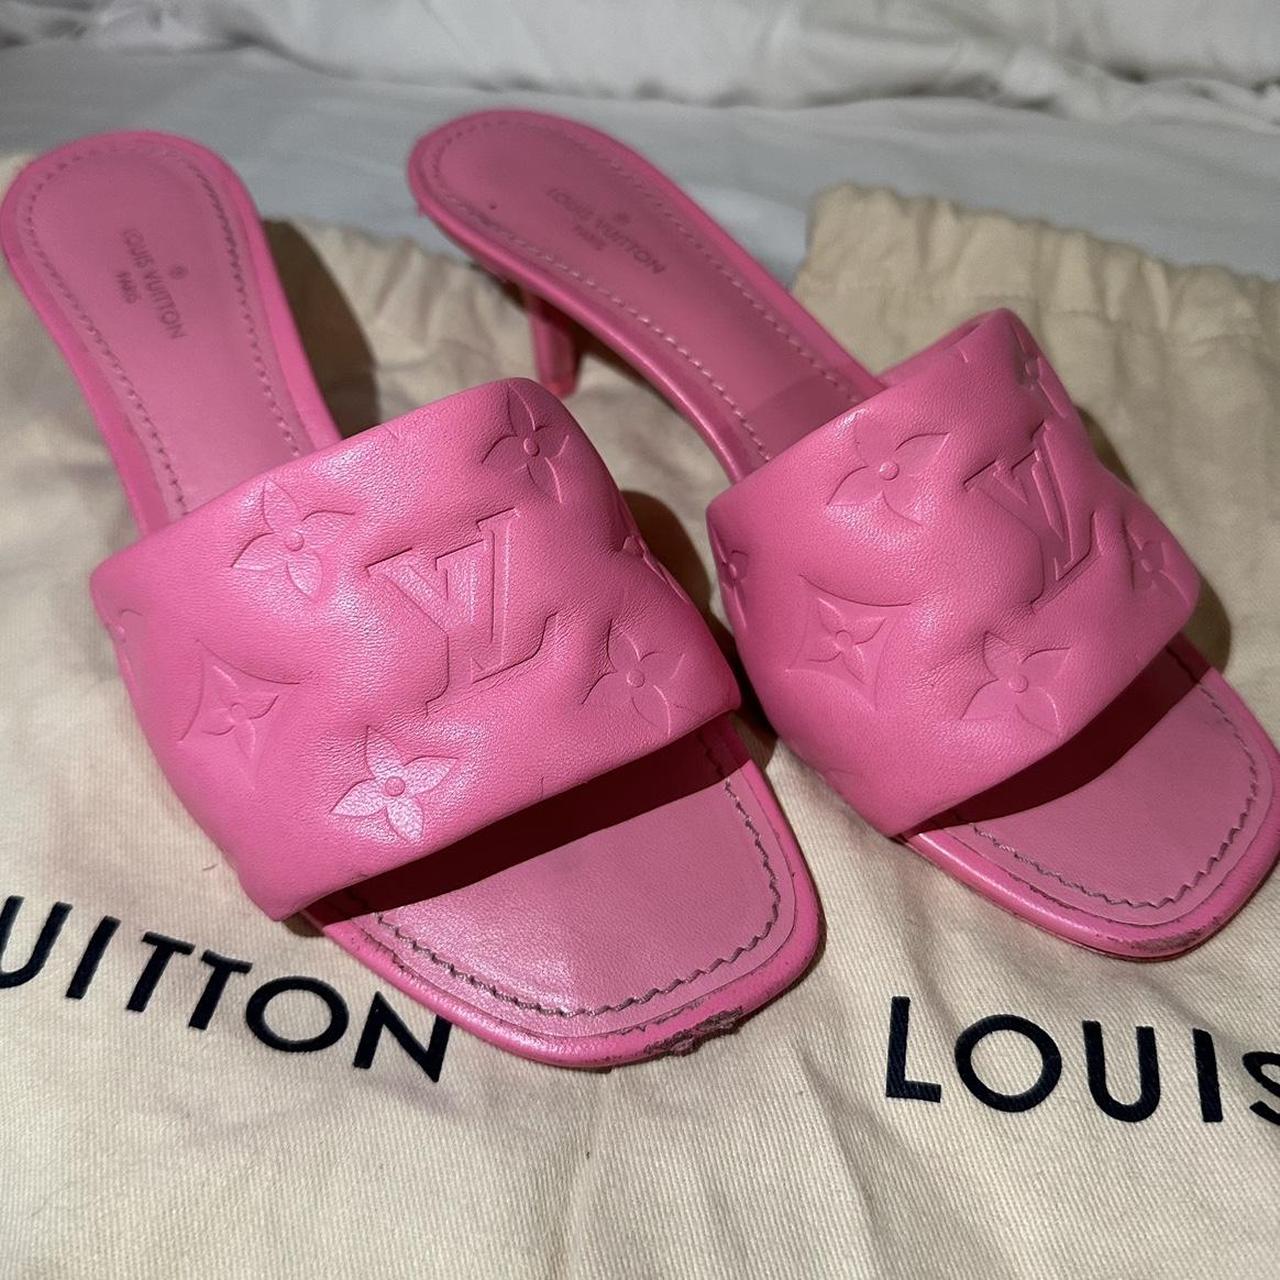 Louis Vuitton Women's Revival Mule Sandals